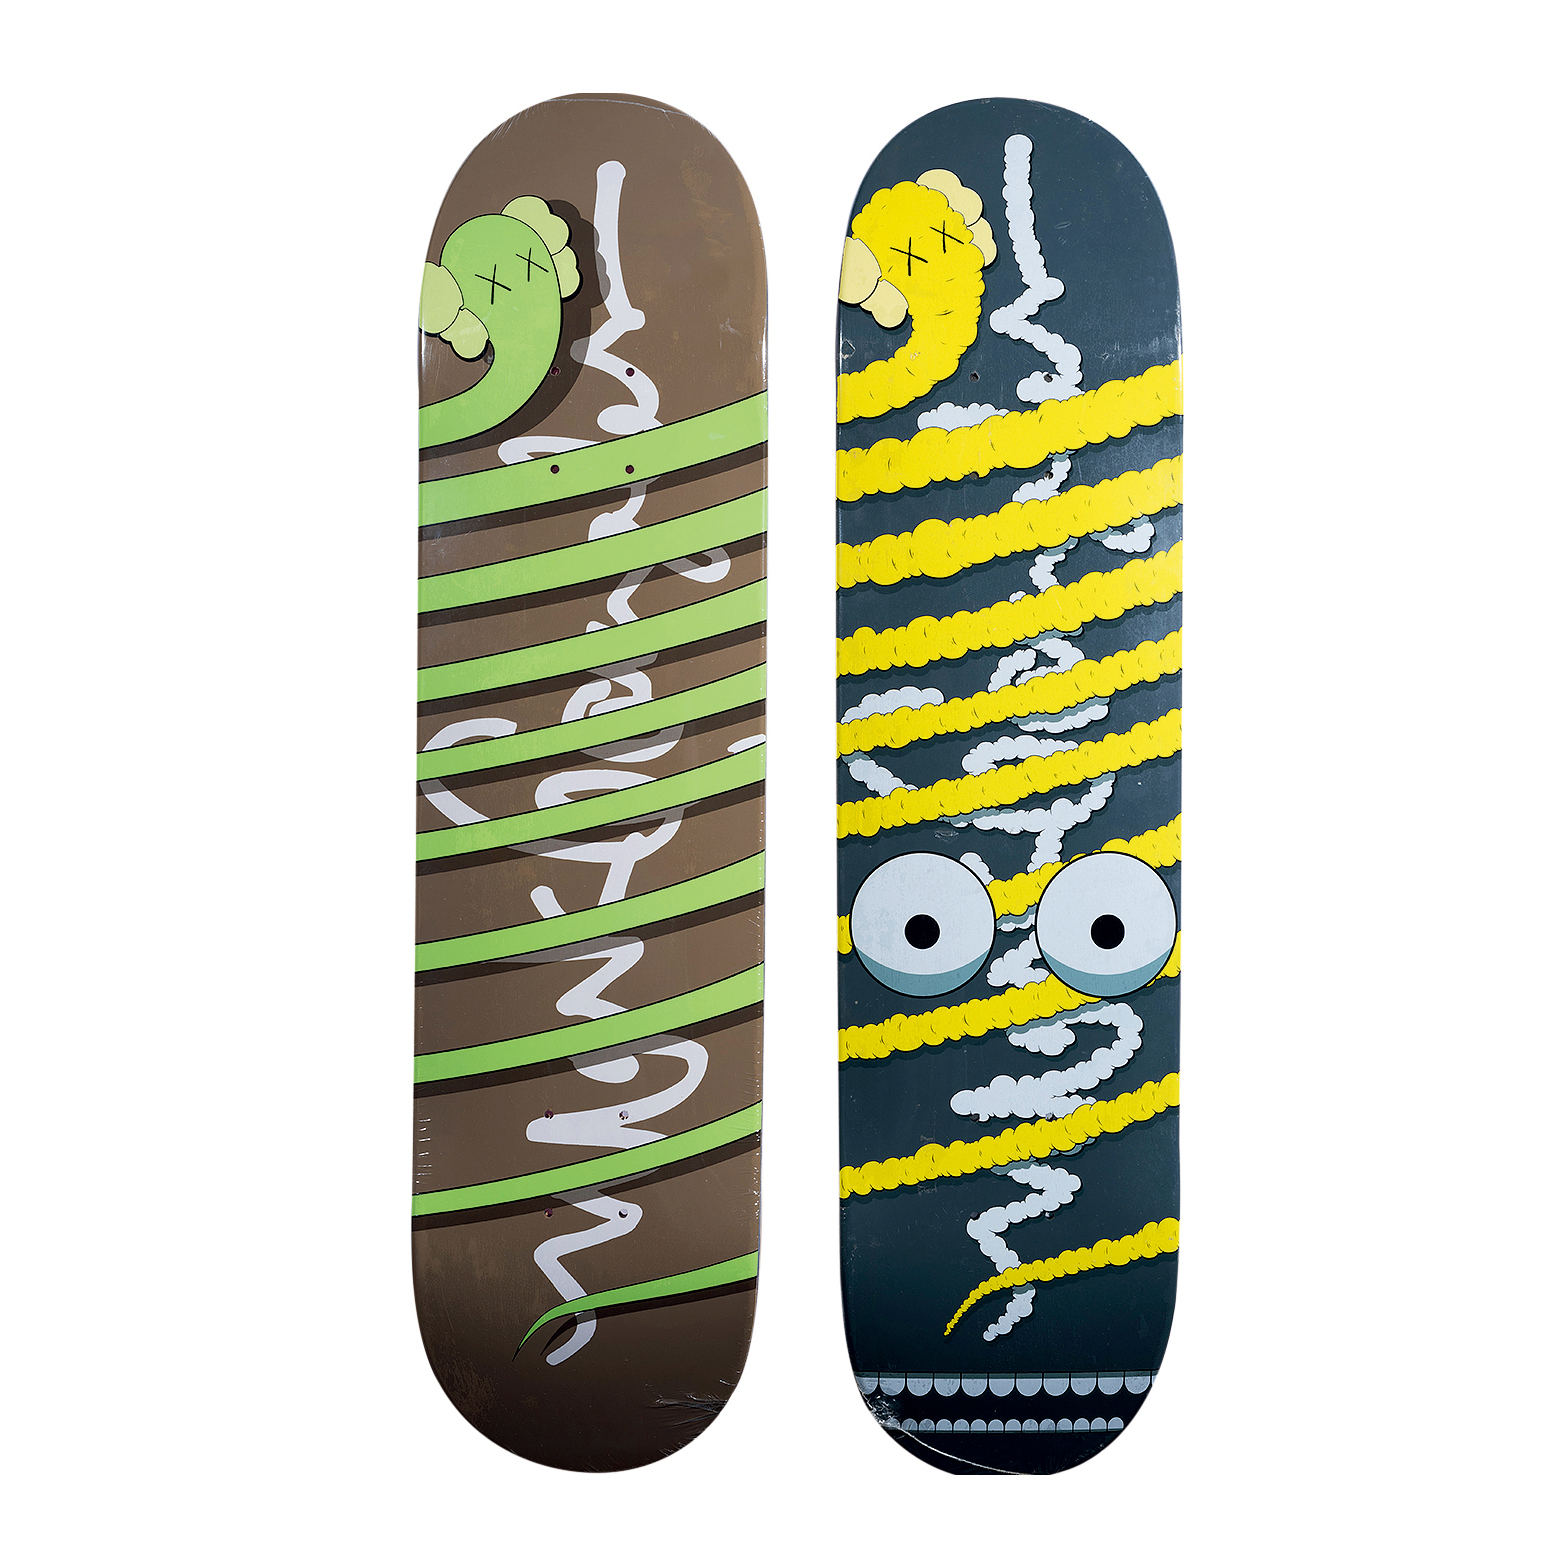 2005年kaws布莱恩唐纳利krookedkawsskateboard滑板ab两件一组彩绘